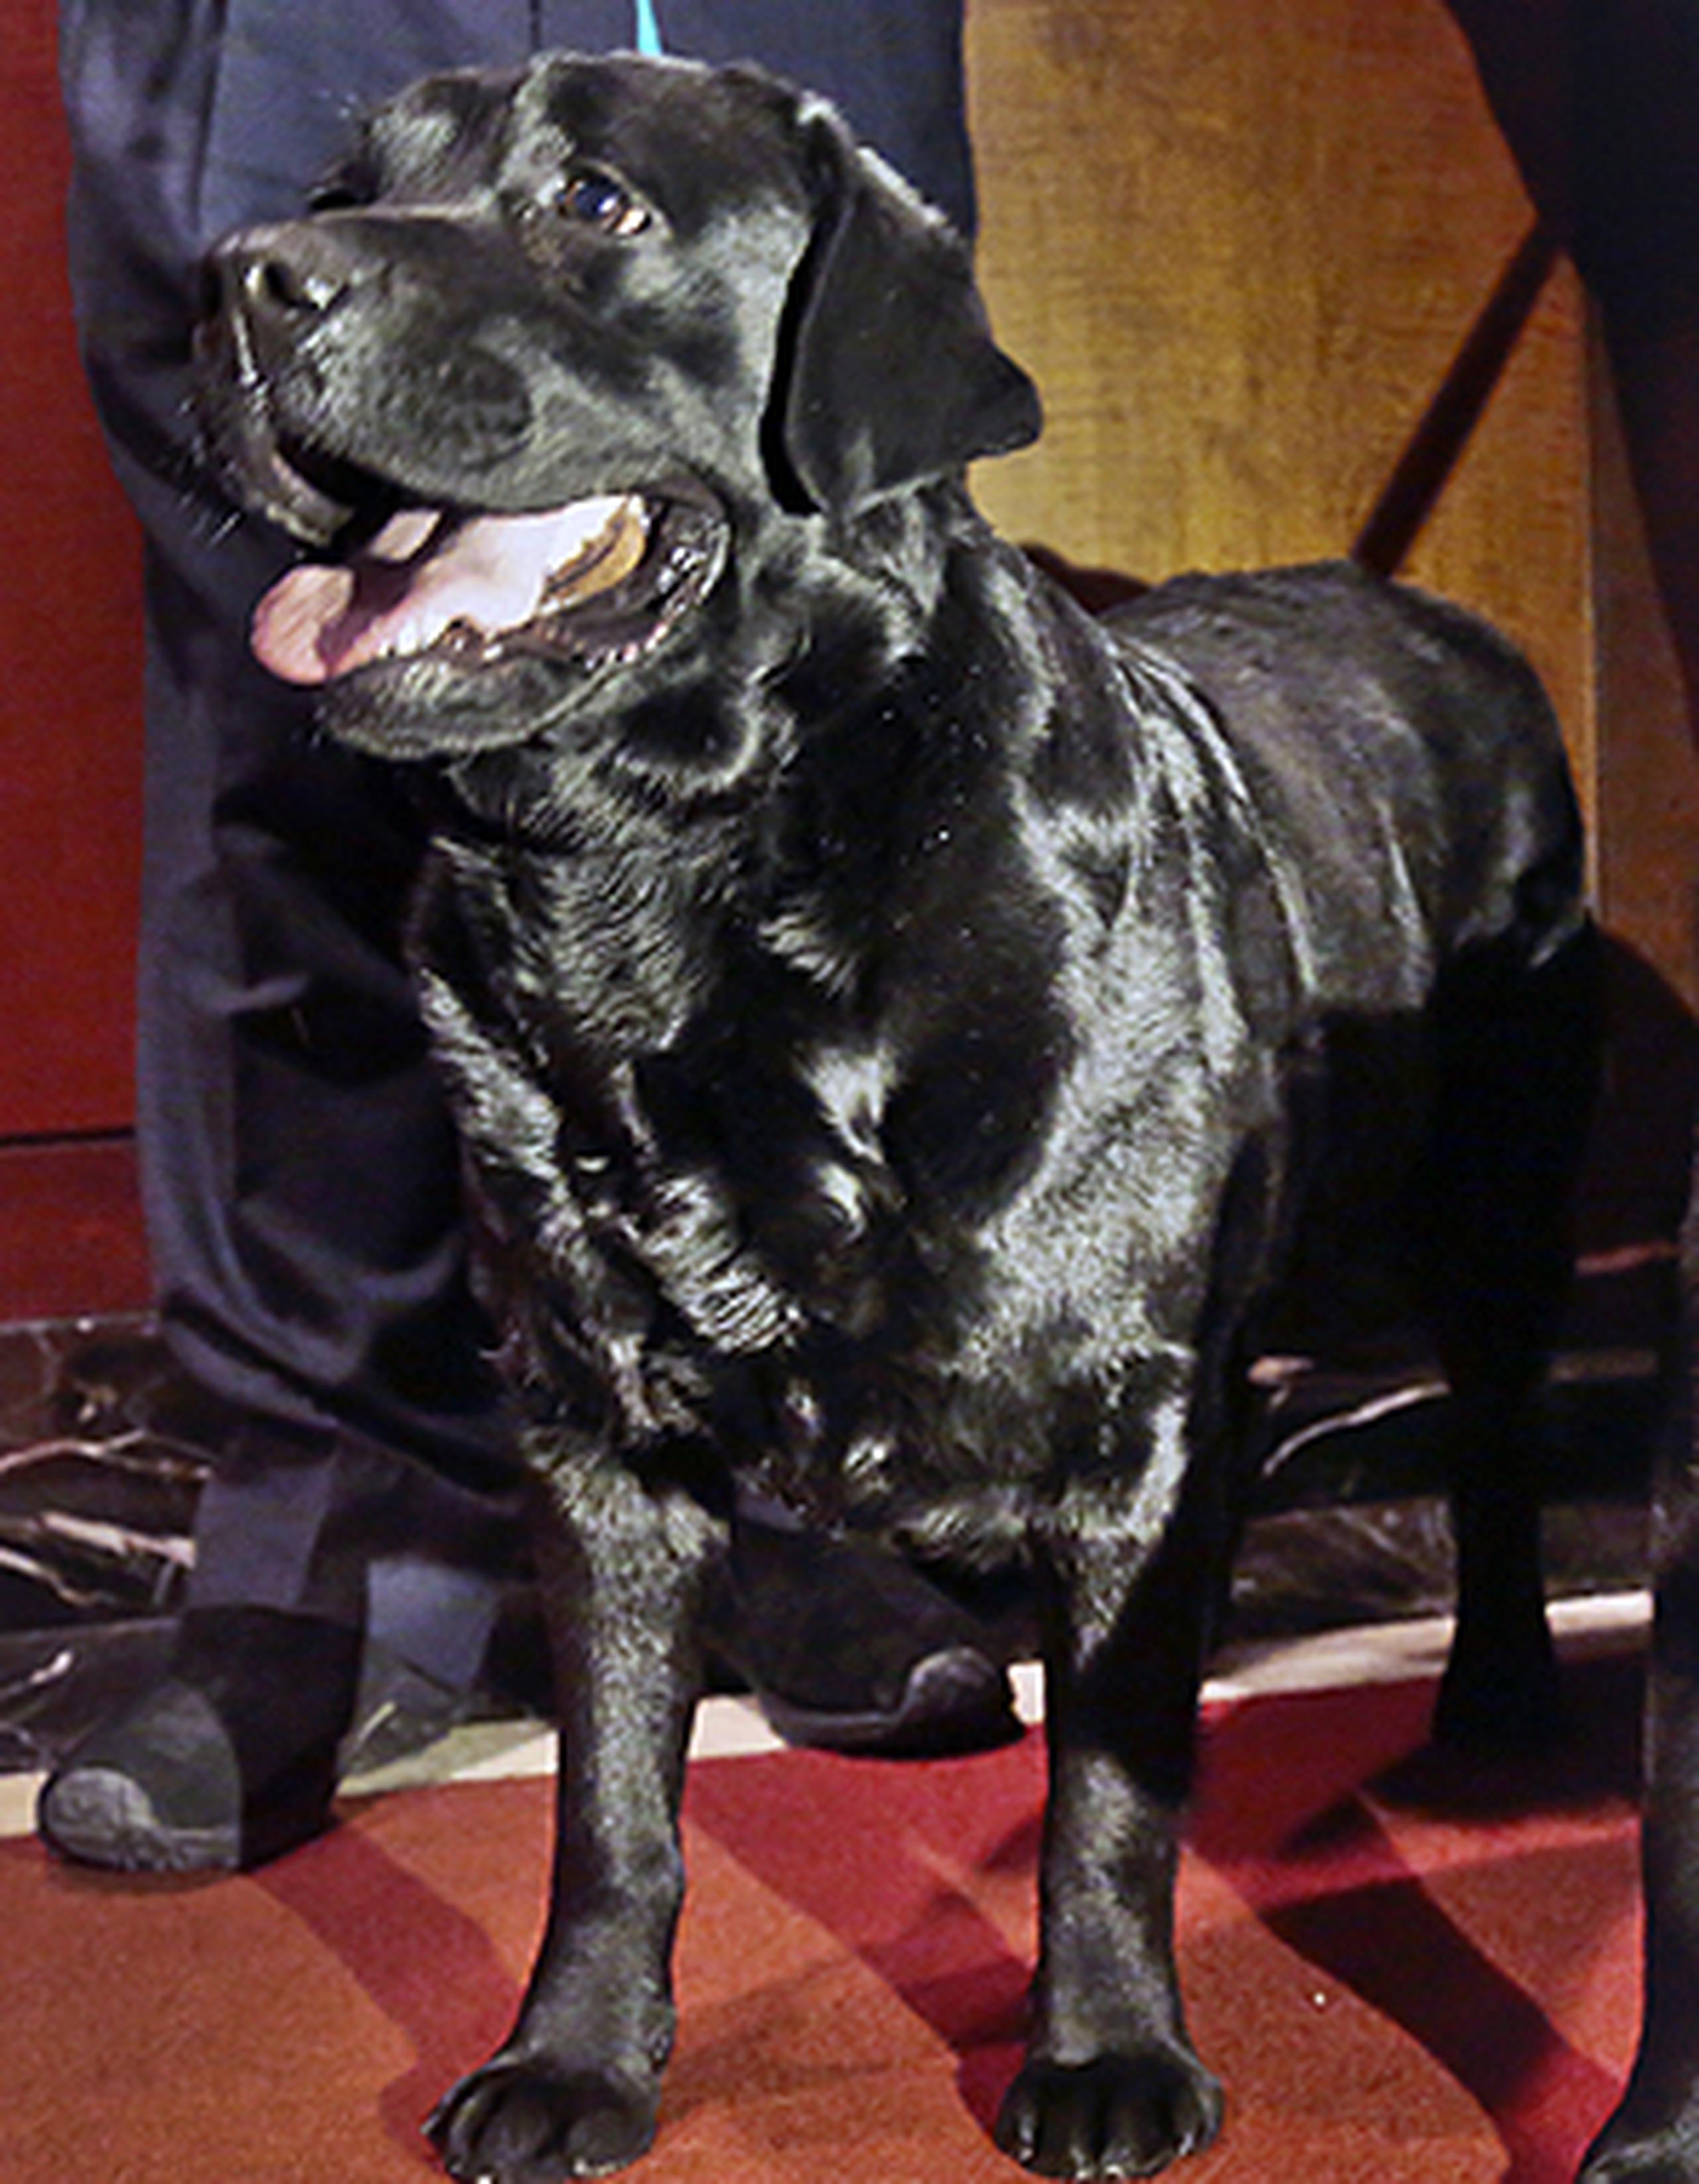 El Labrador ha proliferado por ser considerado como un perro amigable, fácil de entrenar y que fue desarrollado a partir del juego de "ve a buscar" para asumir otros papeles. (AP)